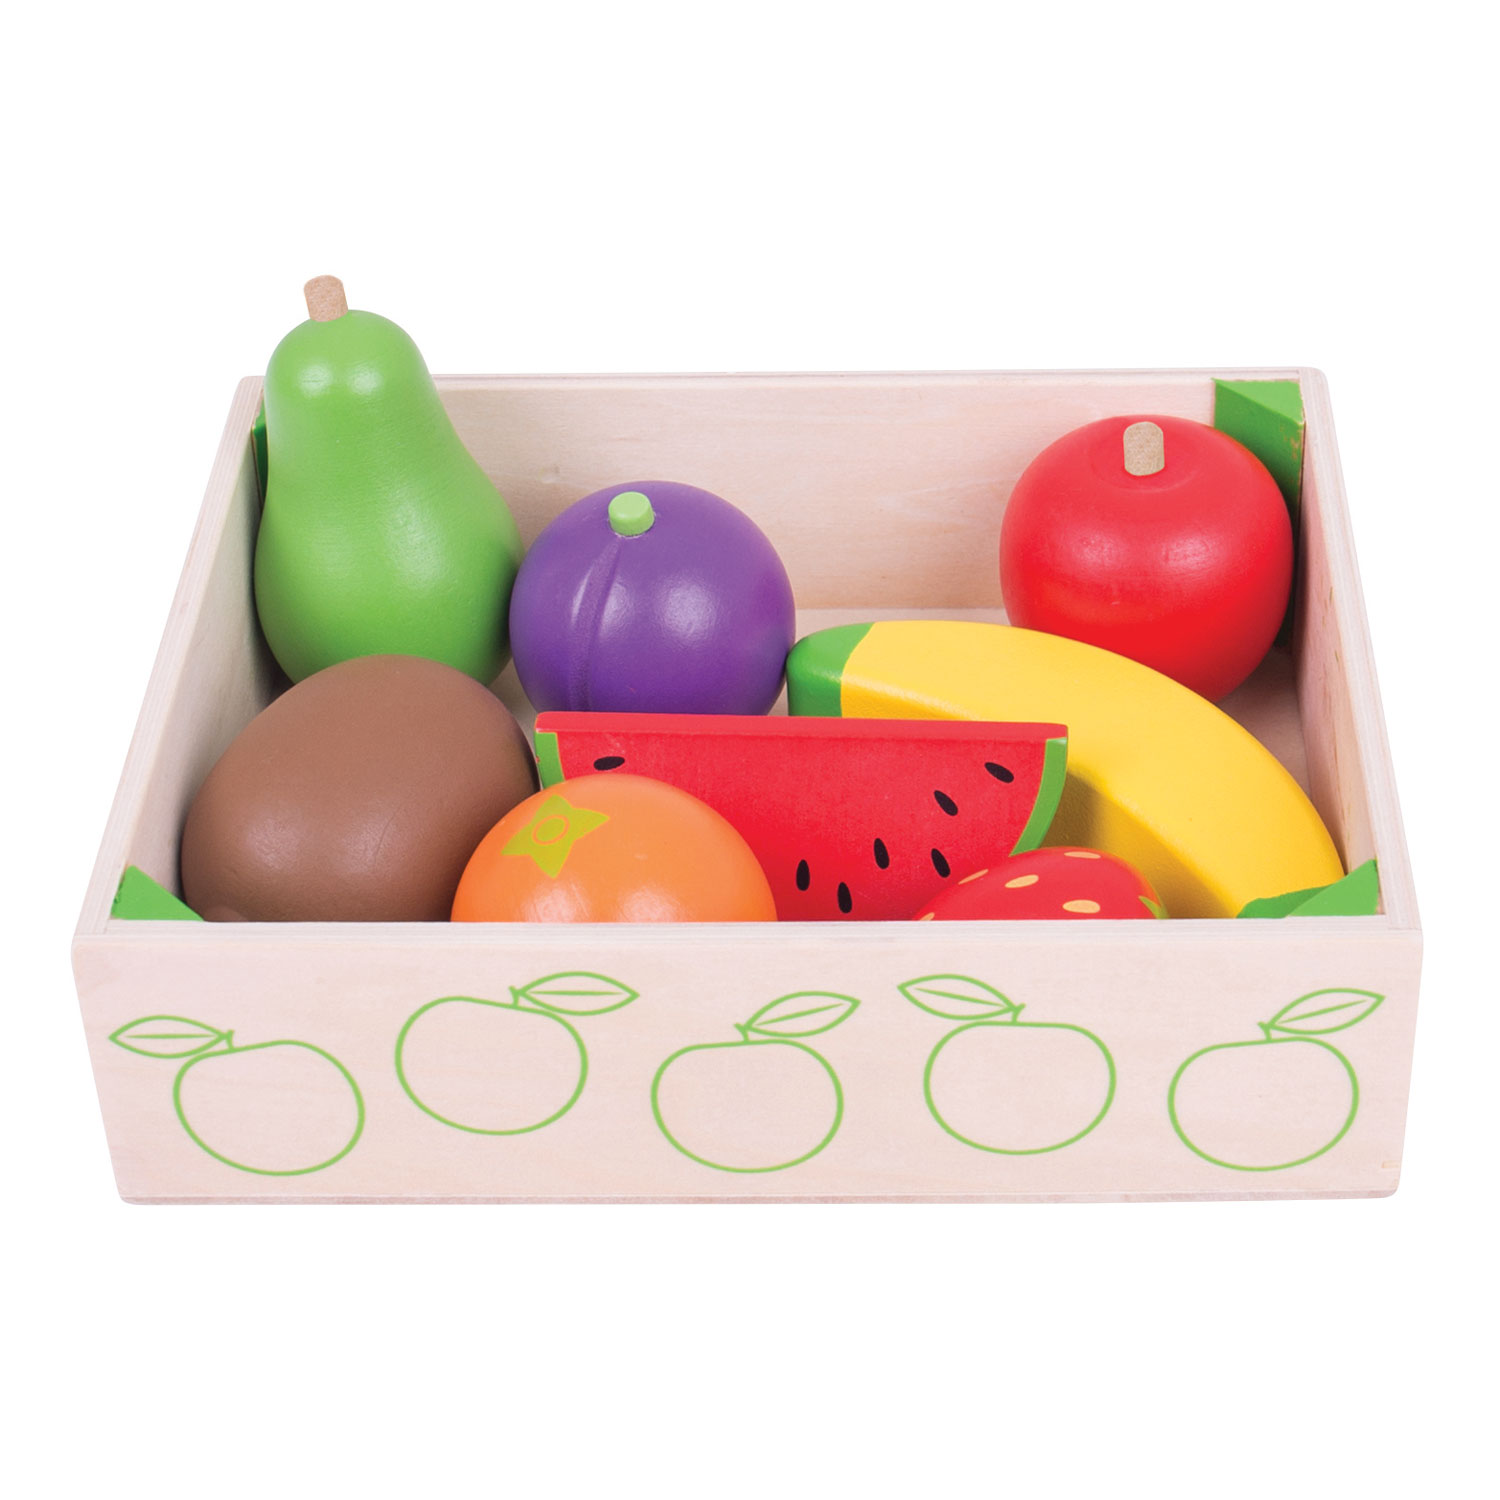 Купить блокс фрутс игрушки с кодом. Фрукты в коробке. Коробка с фруктами и игрушкой. Коробка овощи фрукты Игрушечные. Игрушки ягоды в коробочках.